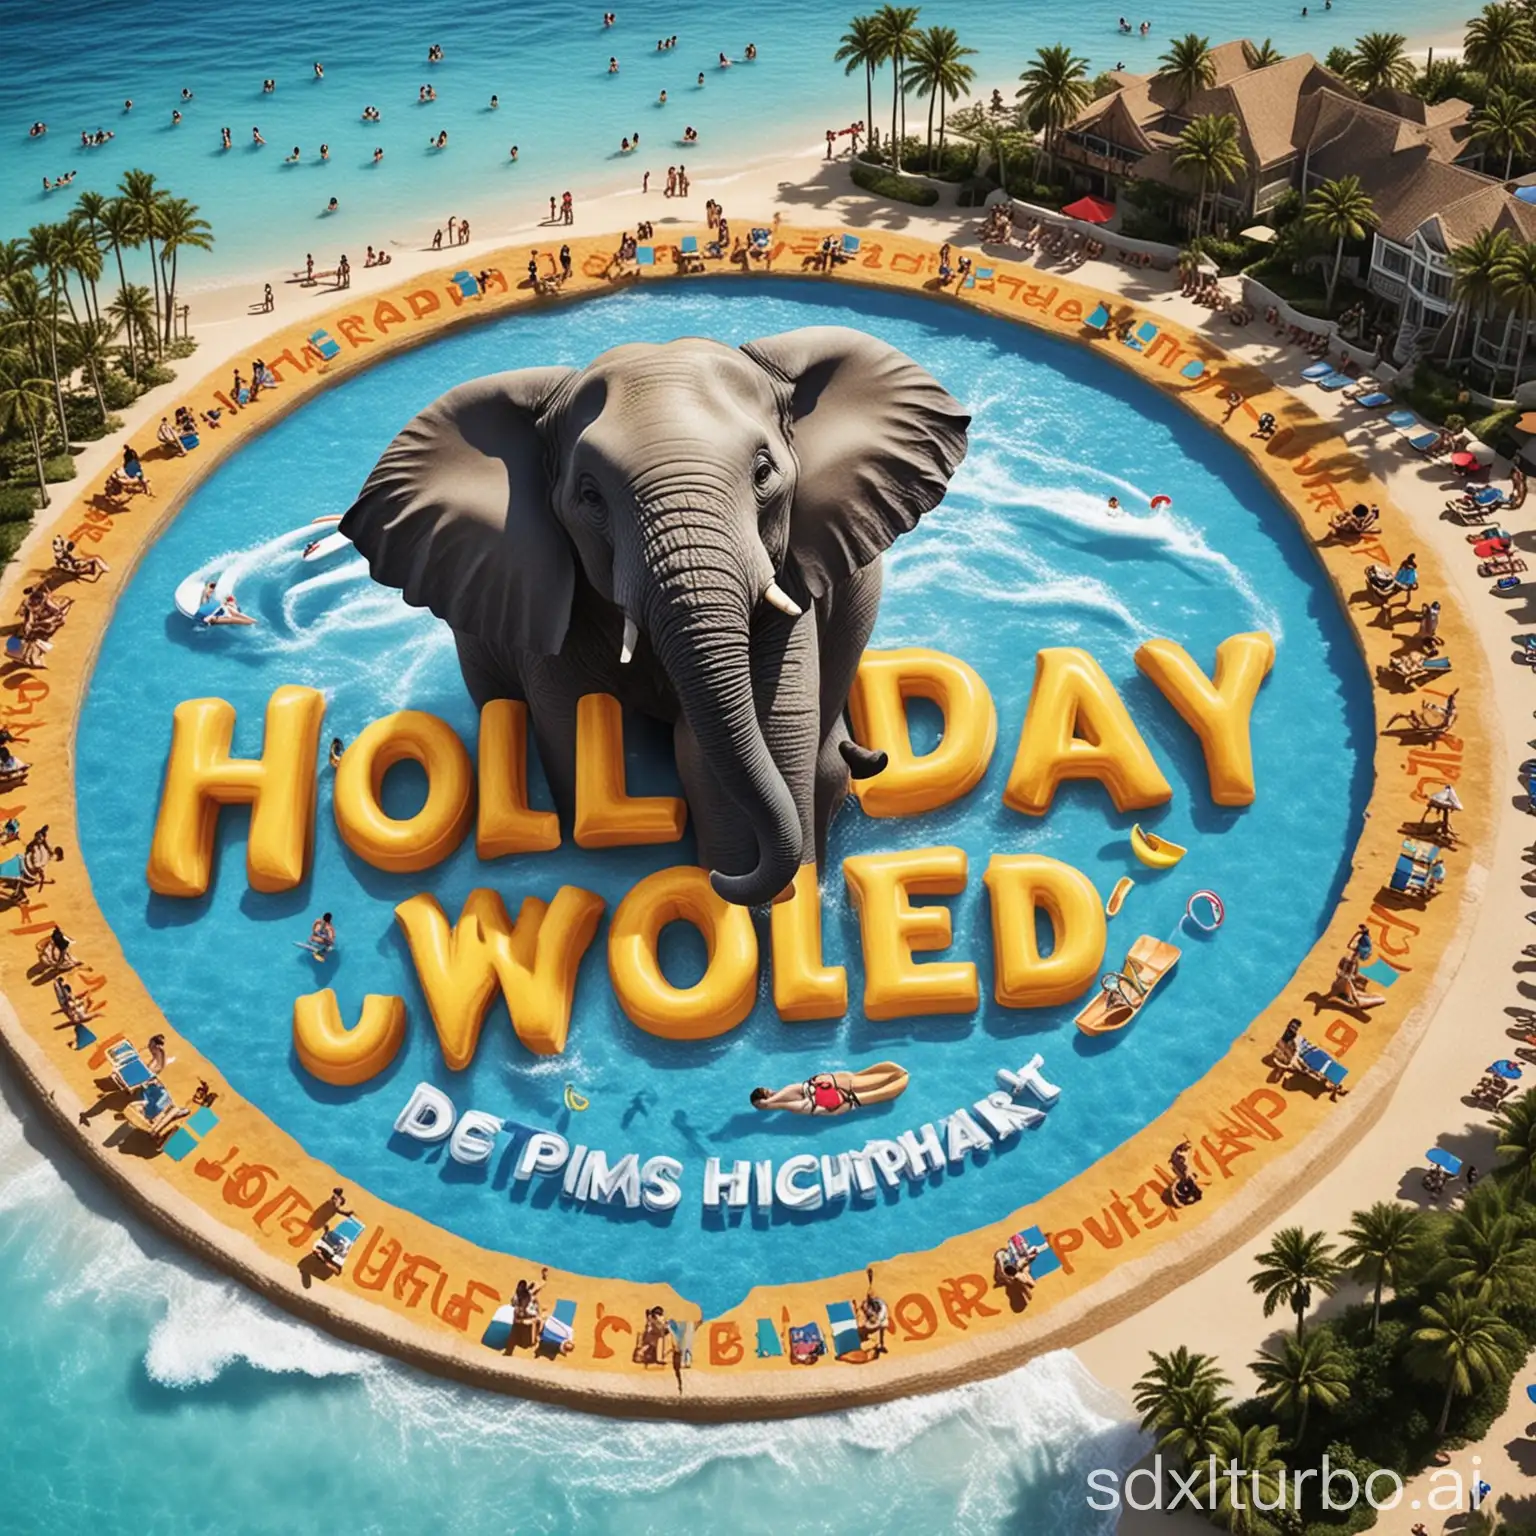 Haz un logotipo de la empresa Holiday World es un complejo de hoteles y un parque de agua que tiene un elefante como parte del logotipo 

